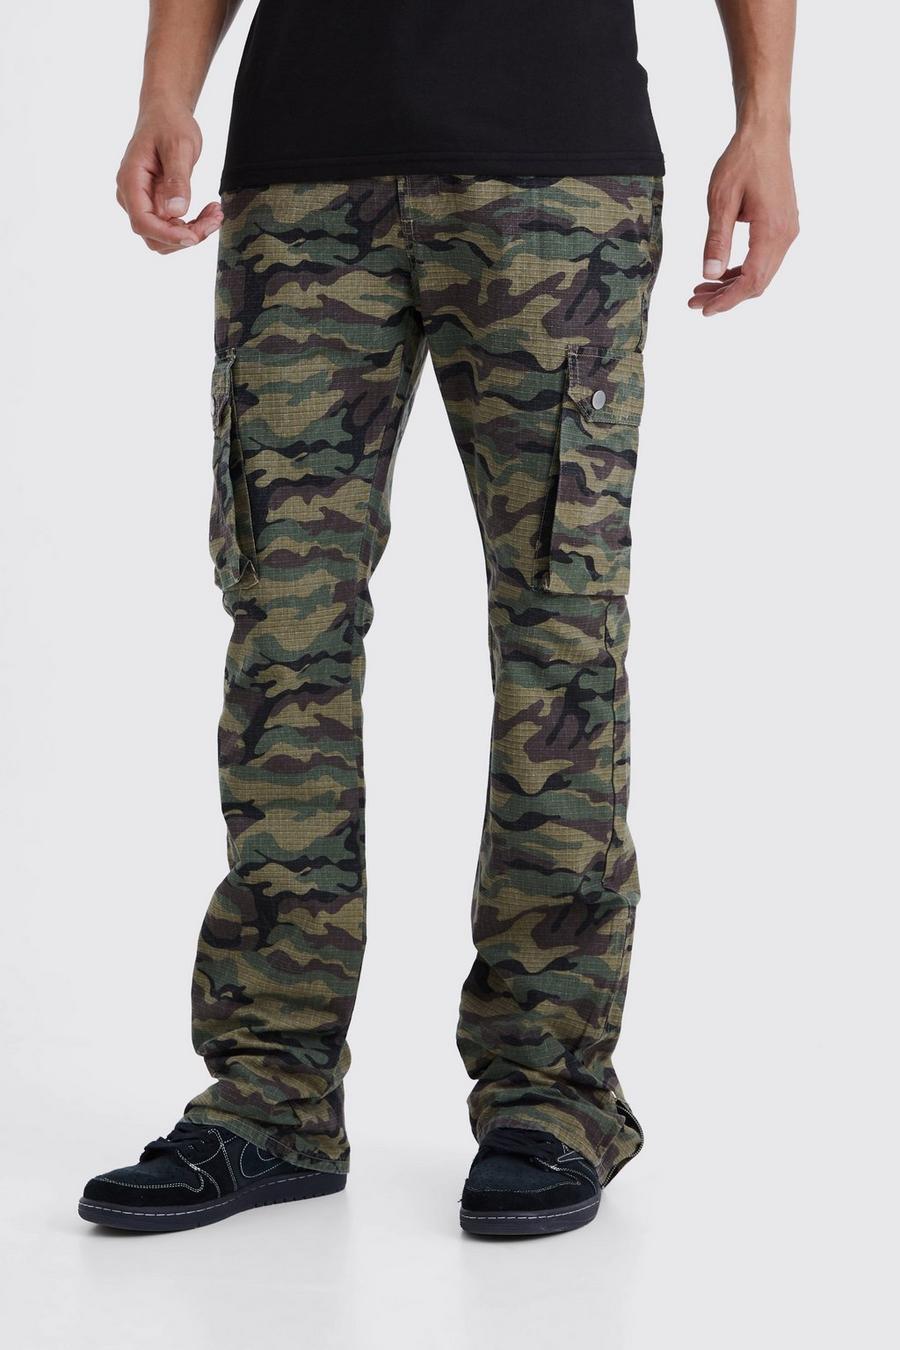 Pantaloni Cargo Tall Slim Fit in nylon ripstop in nylon ripstop con pieghe sul fondo, zip e inserti in fantasia militare, Khaki